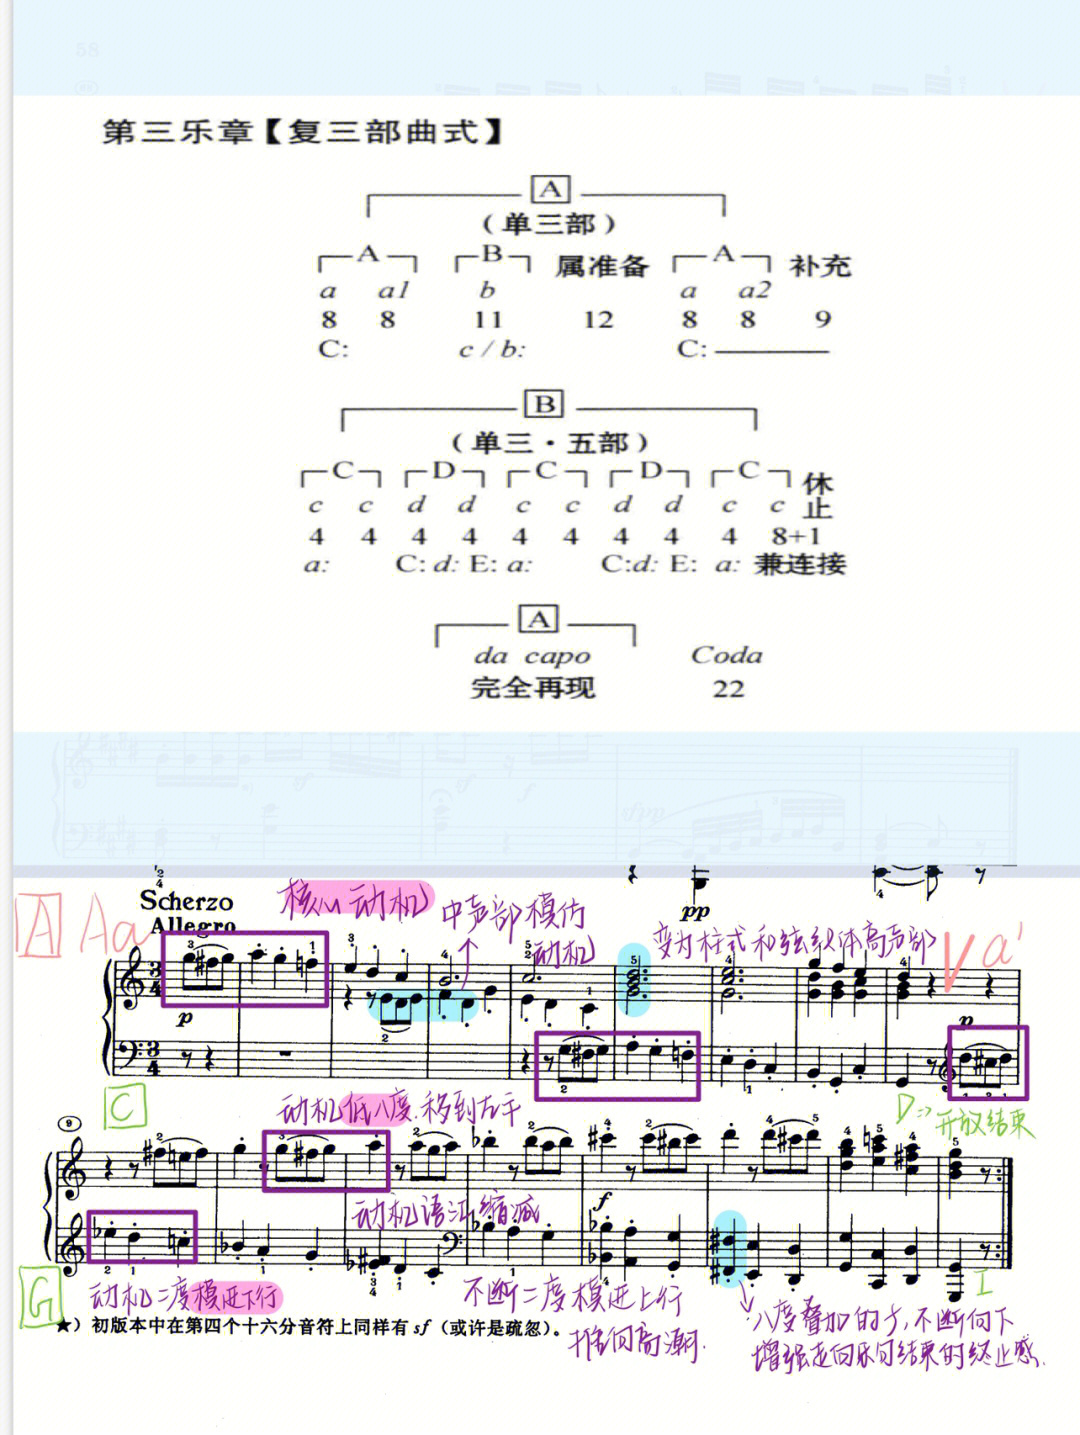 贝多芬钢琴奏鸣曲op2on3第三乐章曲式分析